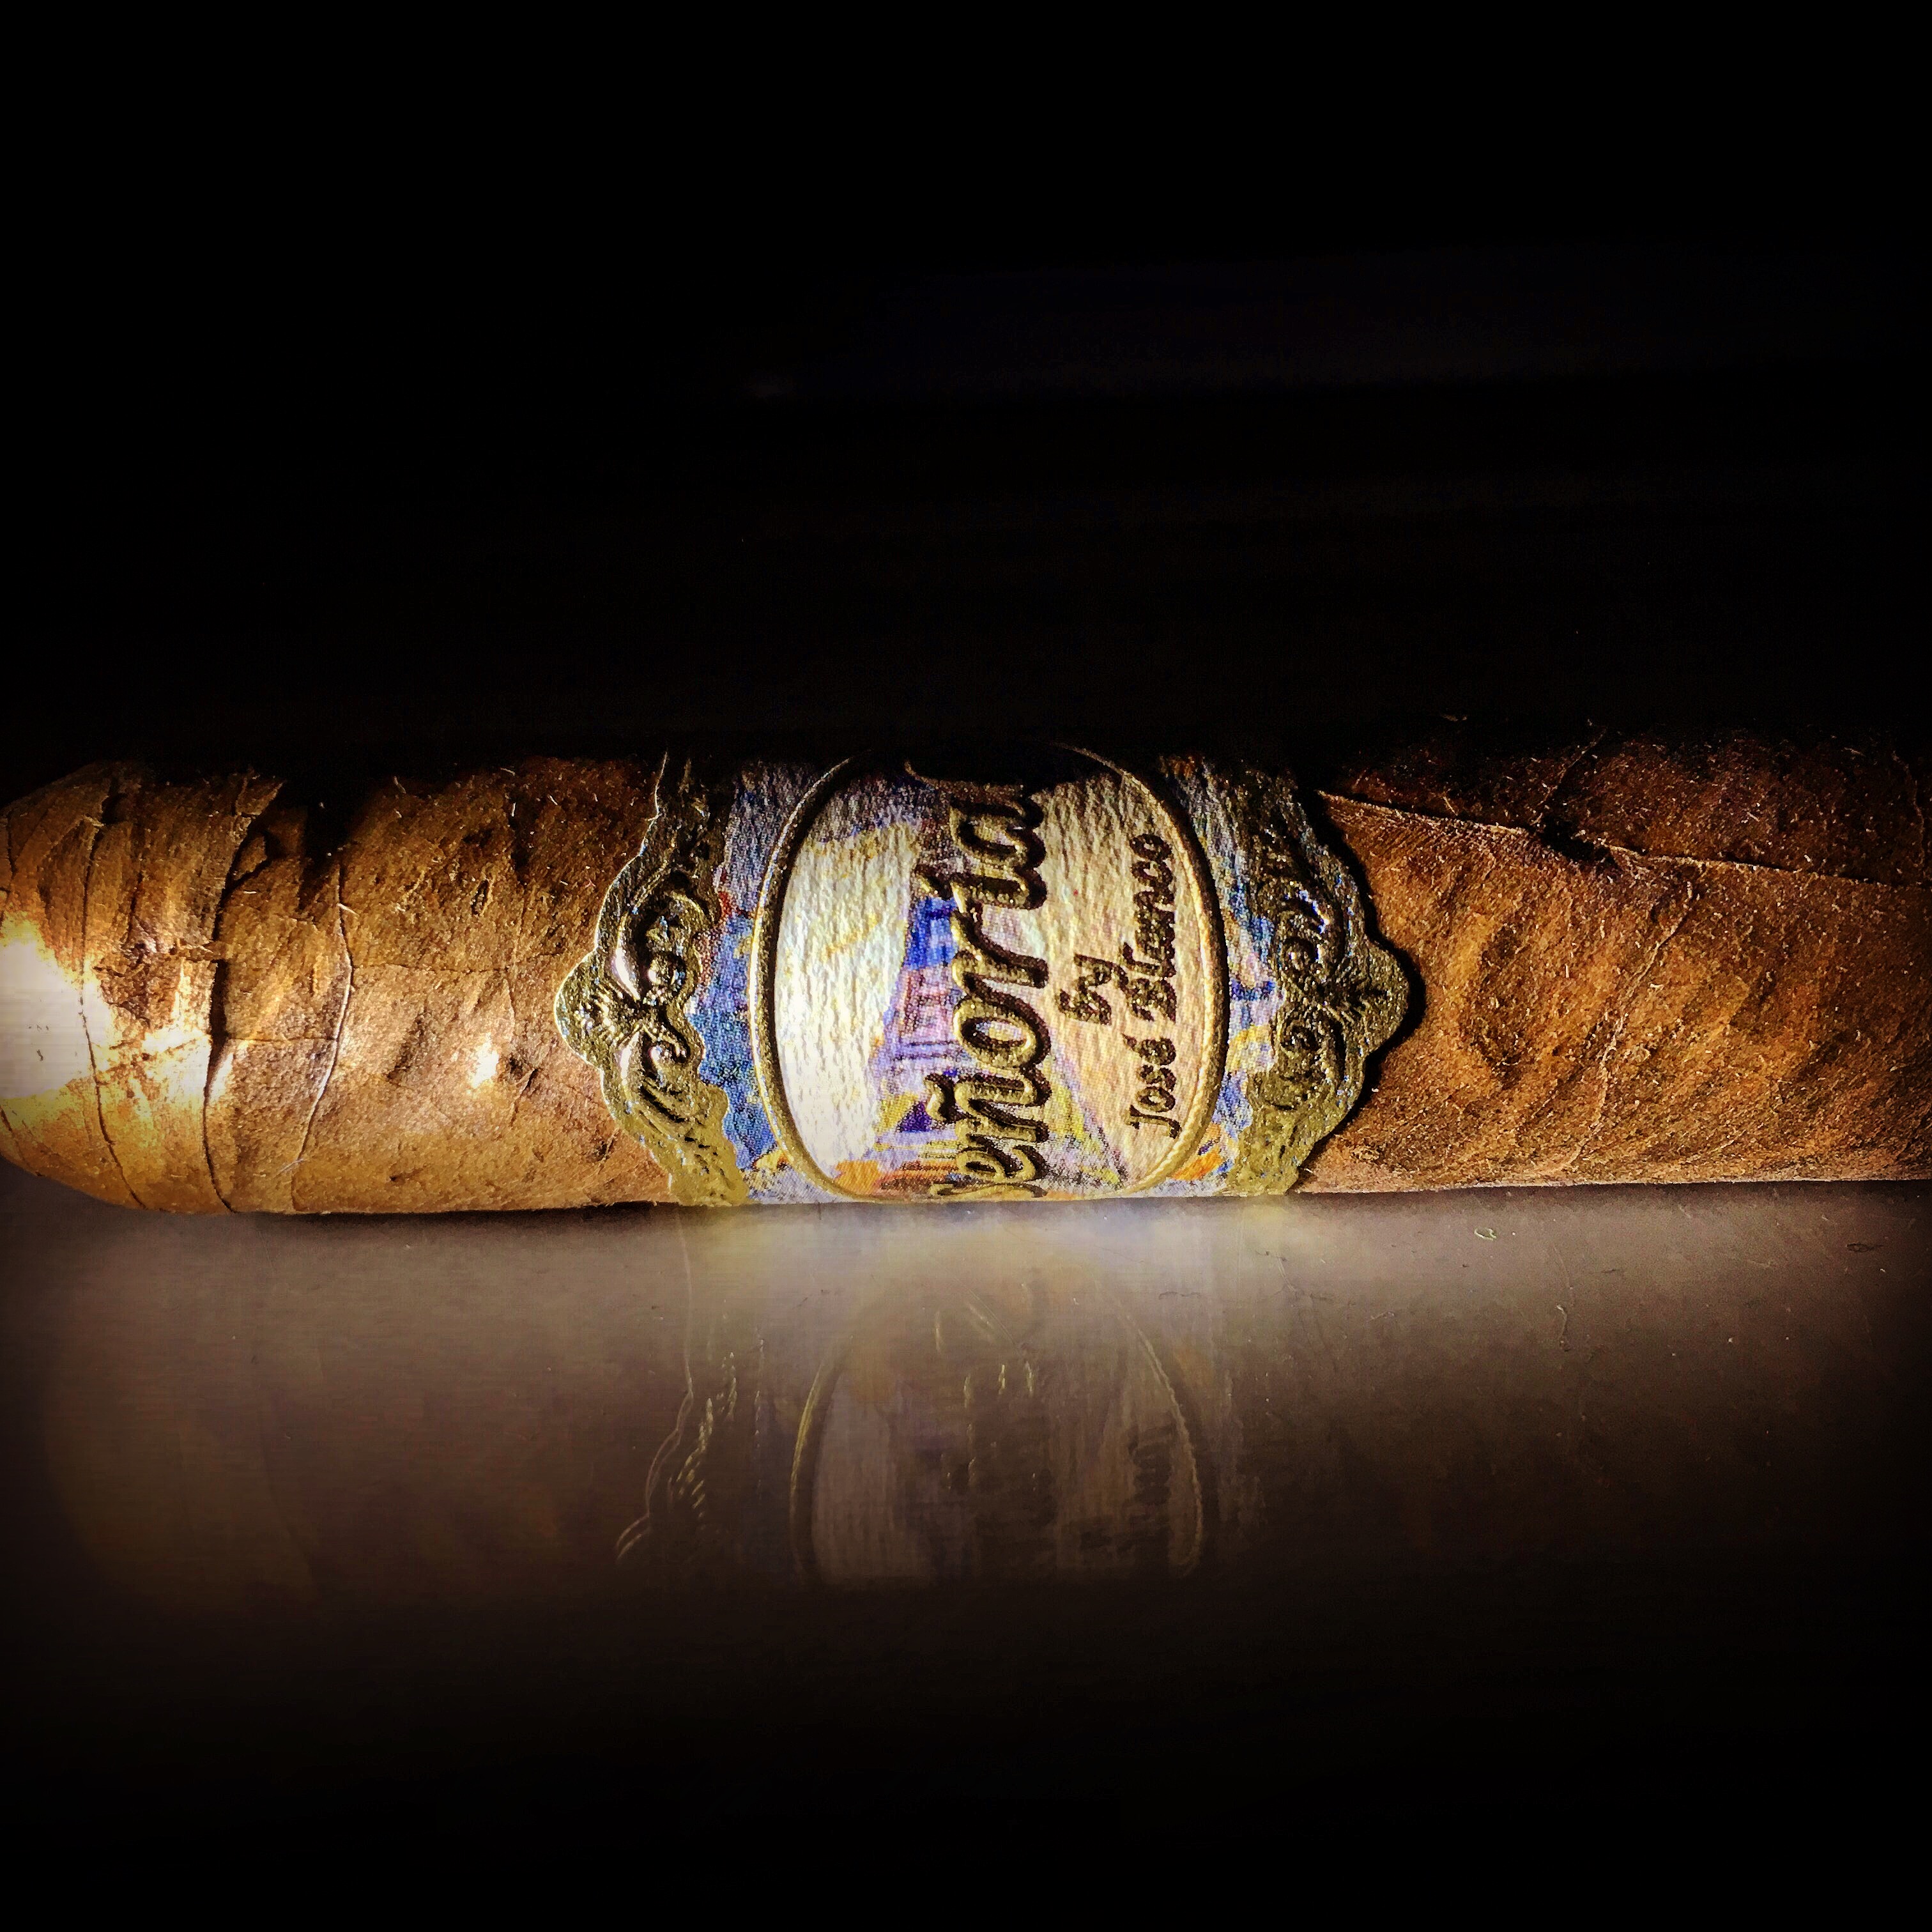 Cigar Review - Señorial by Jose Blanco